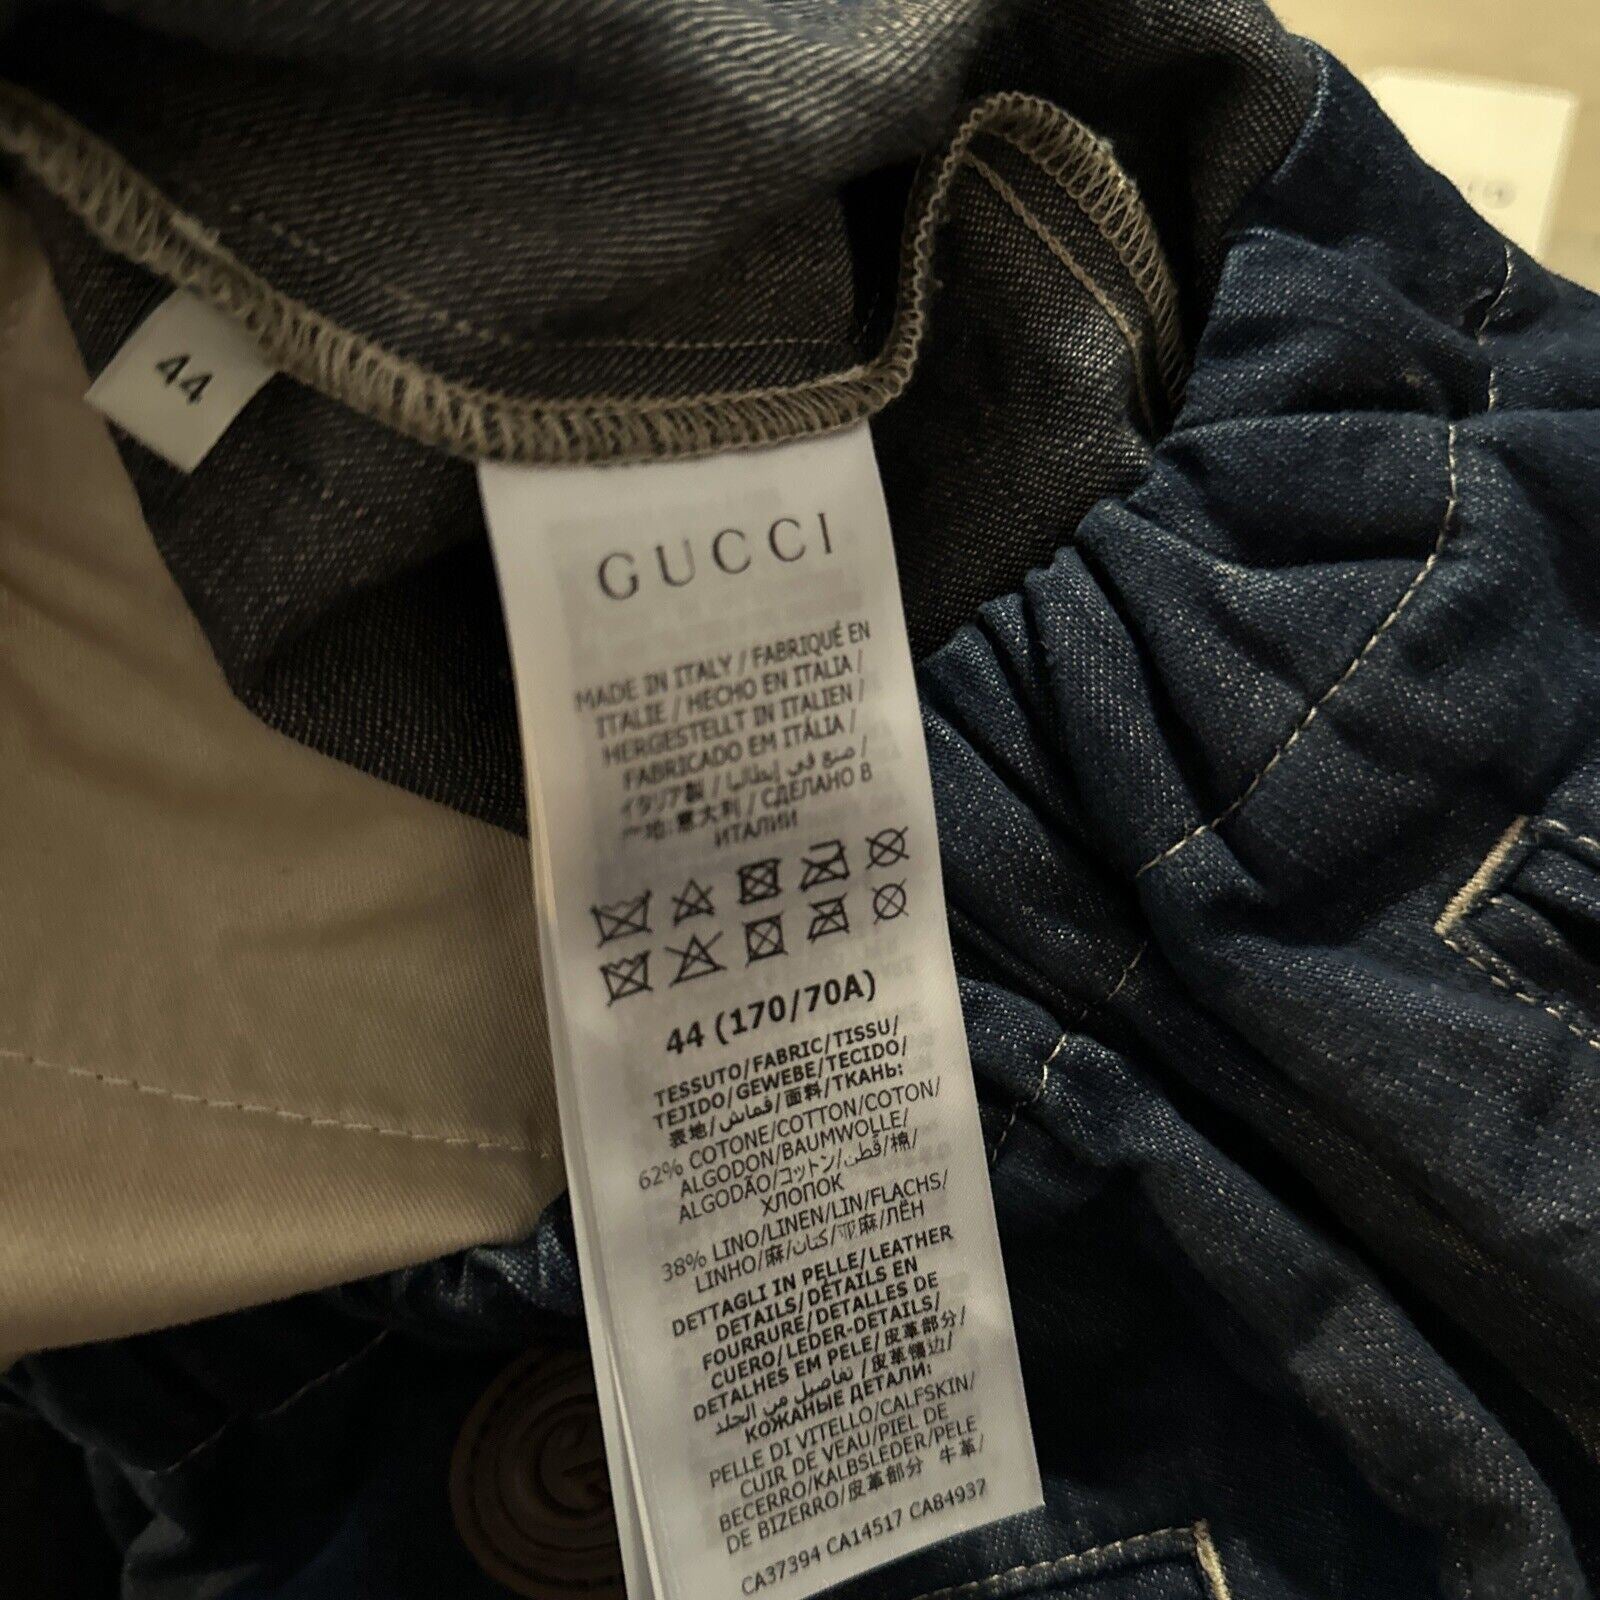 СЗТ $1250 Gucci Мужские шорты из джинсовой ткани с кожей GG DK Blue 28 US/44 EU